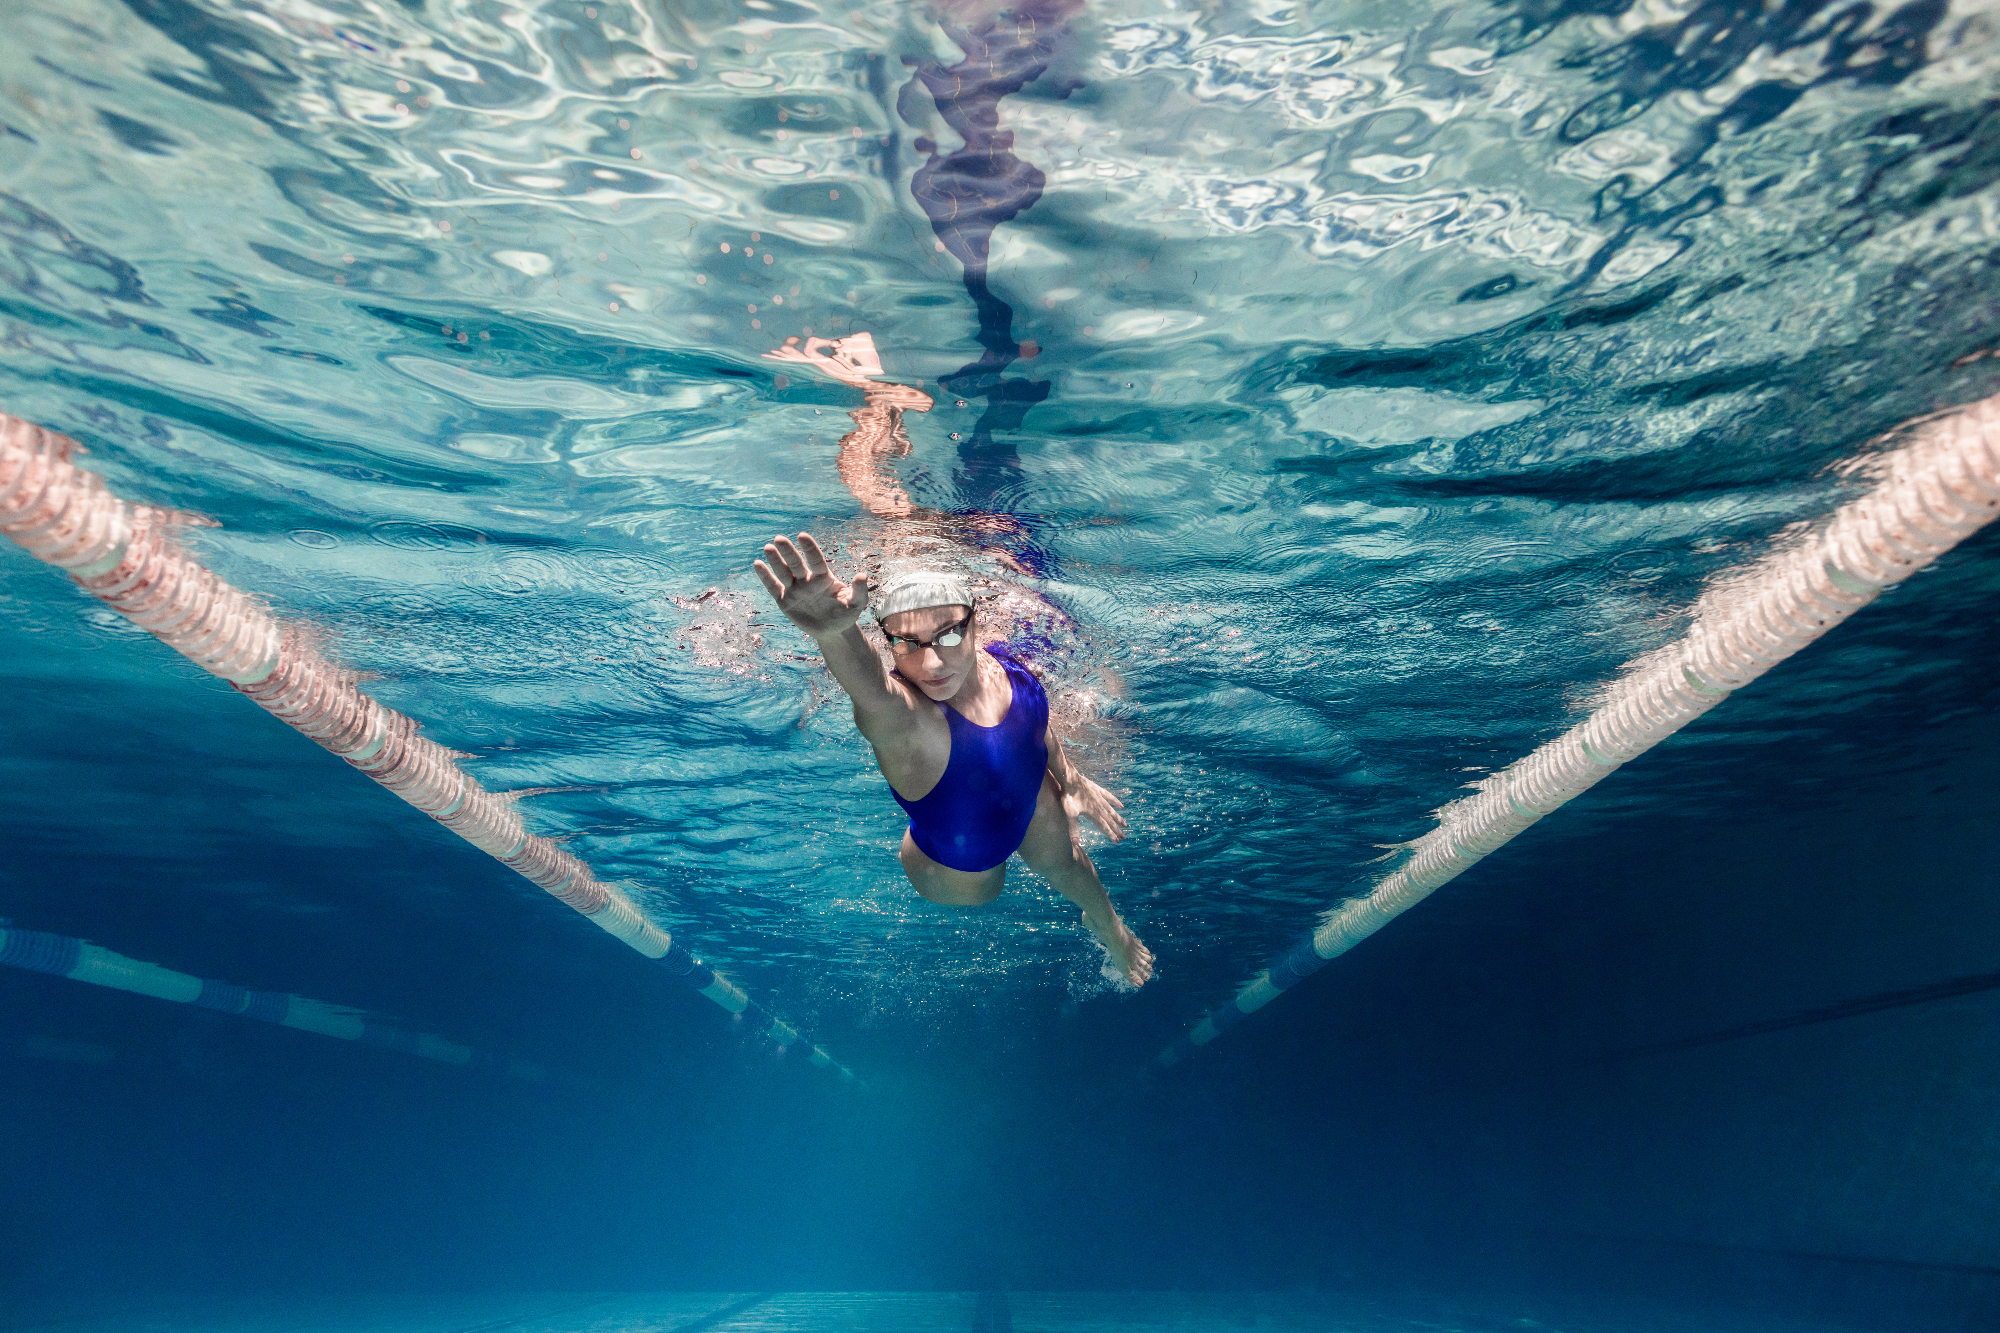 Plavanje spada med najbolj zdrave športe